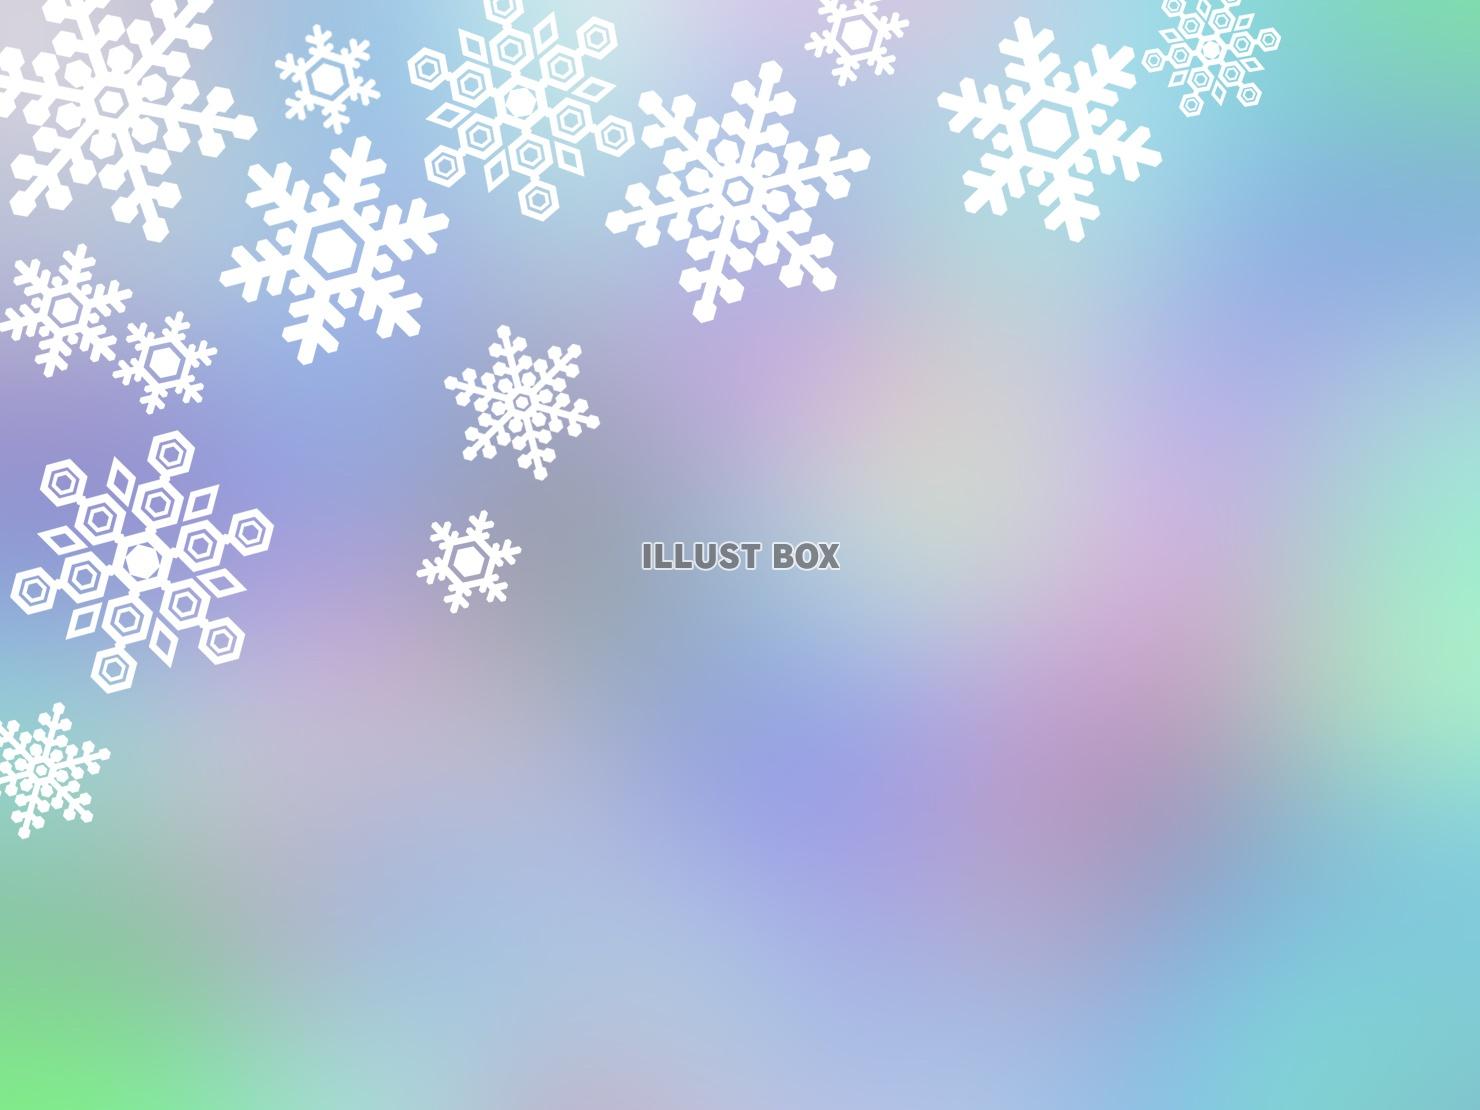 無料イラスト 雪の結晶壁紙グラデーションカラー背景素材